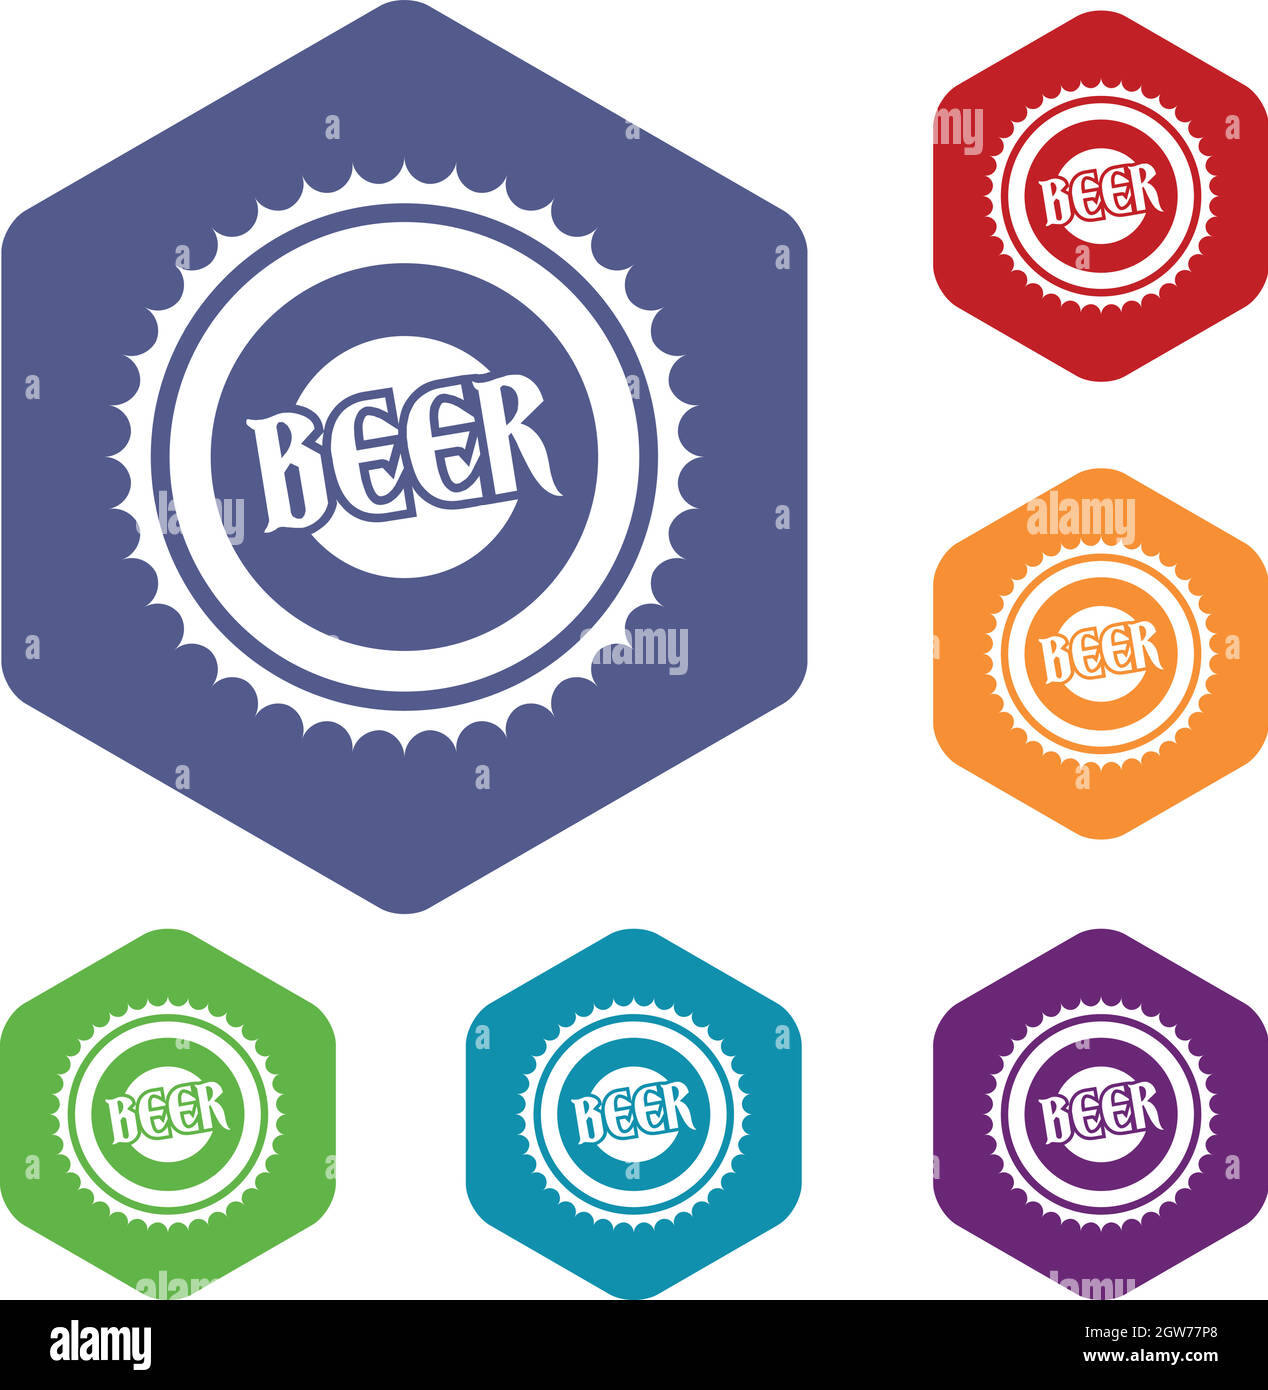 Beer bottle cap icons set Stock Vector